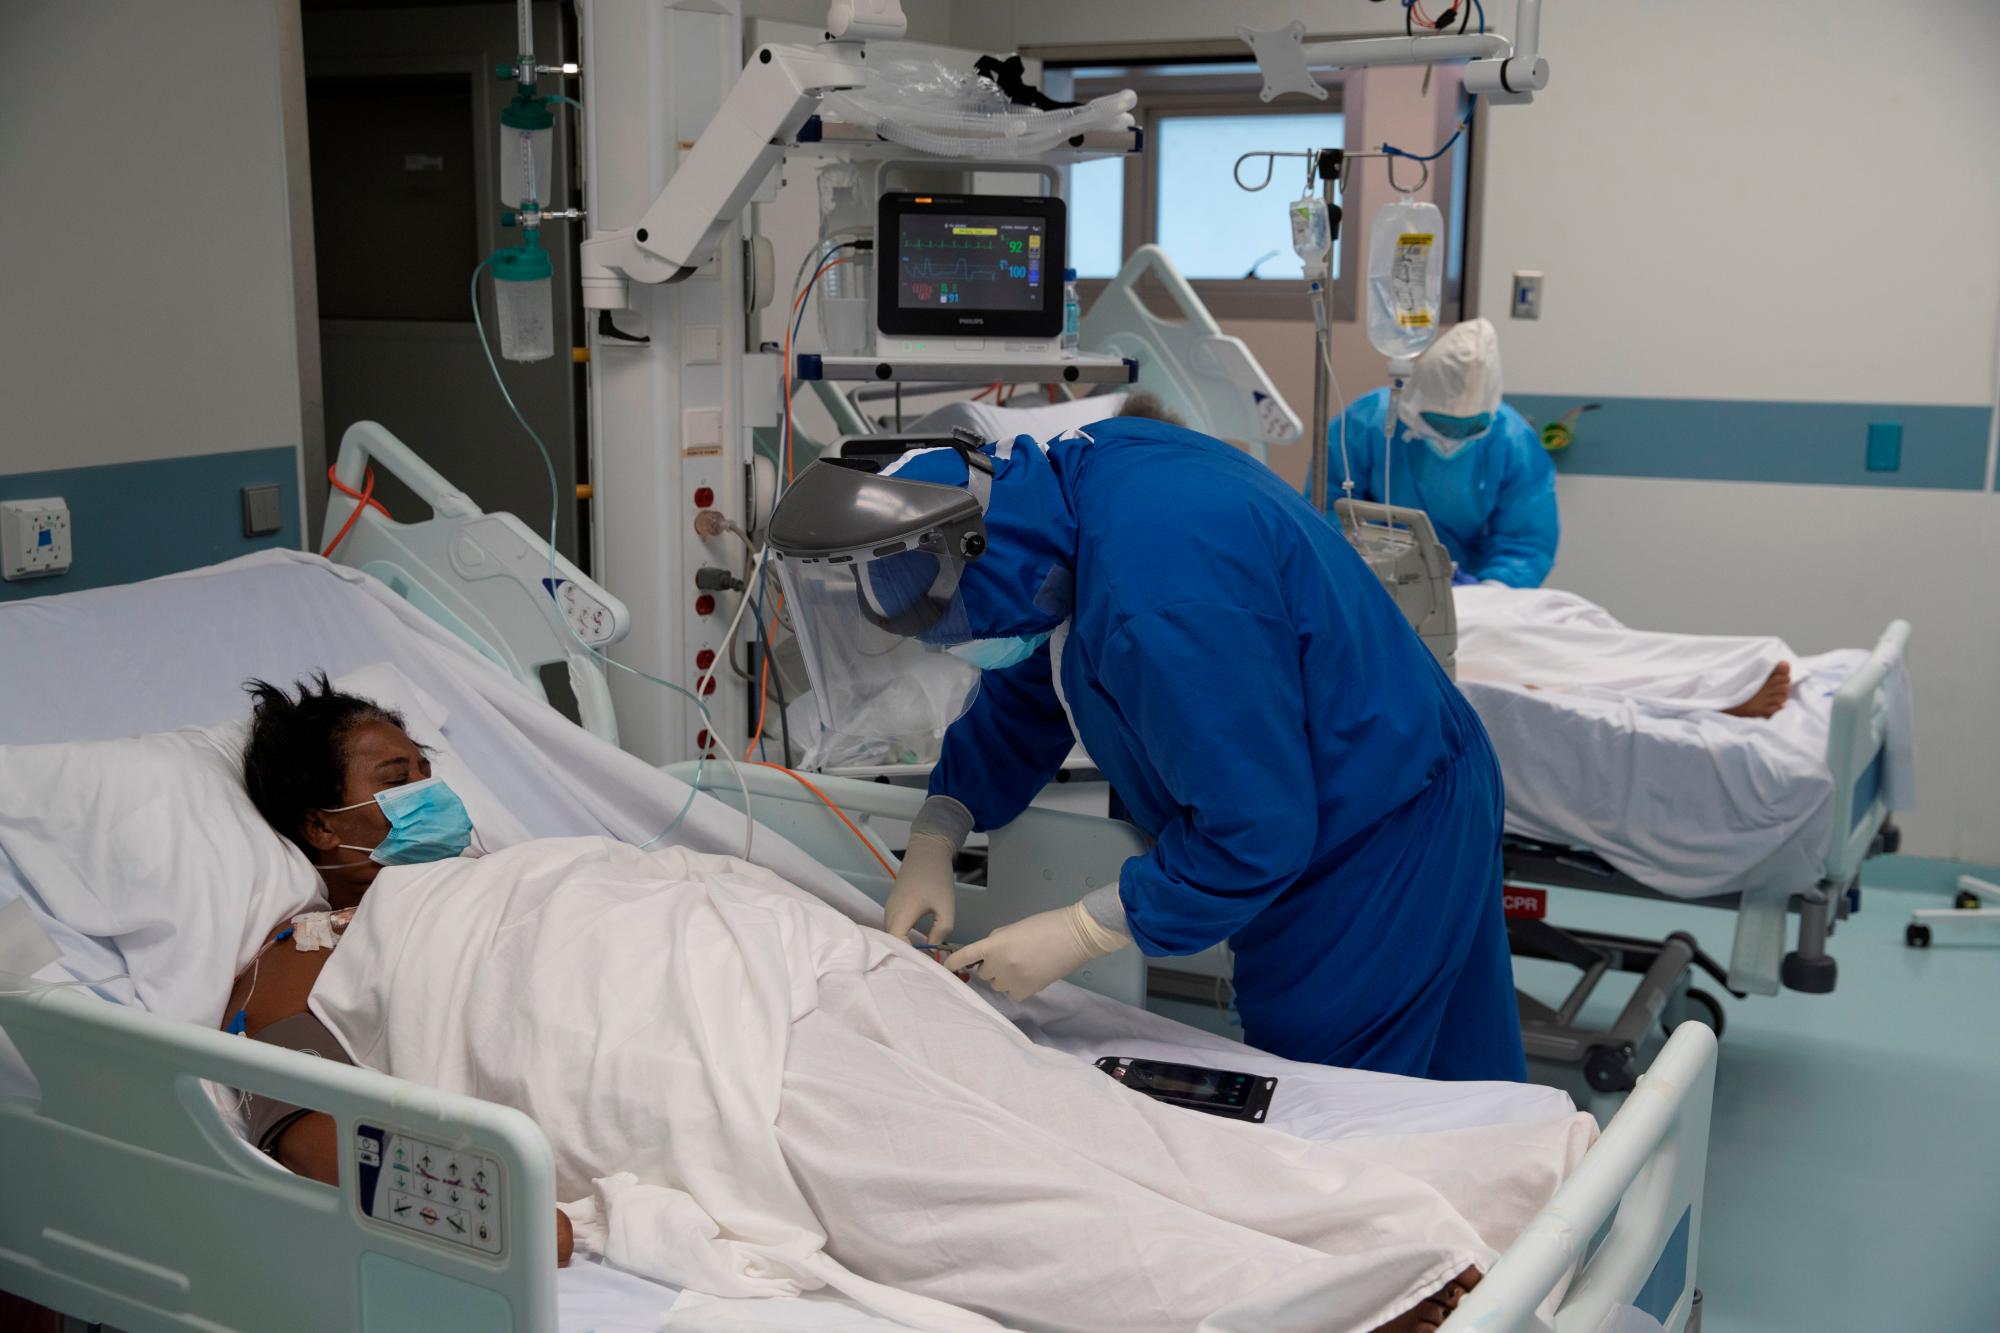 El personal médico atiende a dos mujeres en el área de recuperación de la Unidad COVID-19 del Centro de Oftalmología y Trasplante Cardio-Neuro (Cecanot) en Santo Domingo, República Dominicana, el 15 de mayo de 2020. Durante todo el día, 63 médicos, 120 enfermeras y 35 Los empleados de servicios generales atienden a unos 40 pacientes en el centro de salud. EFE / Orlando Barria